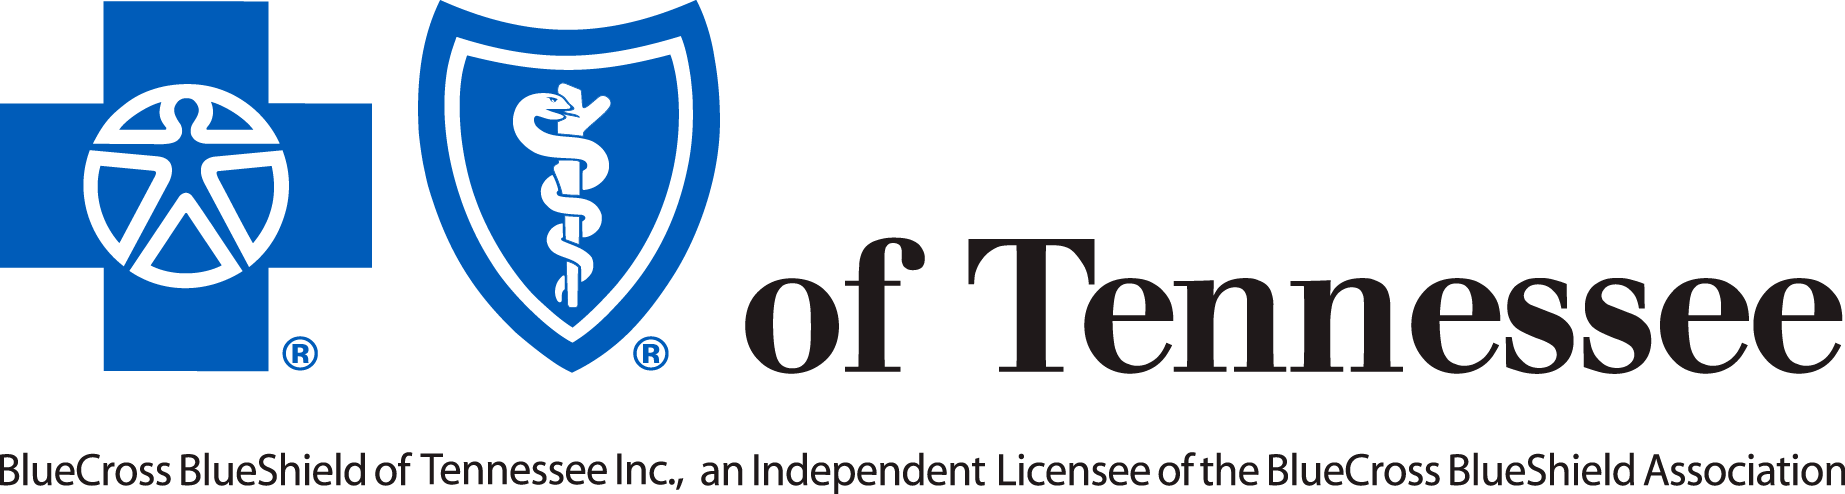 Partner Organizations - Blue Cross Blue Shield Of Tn Logo (1845x494)